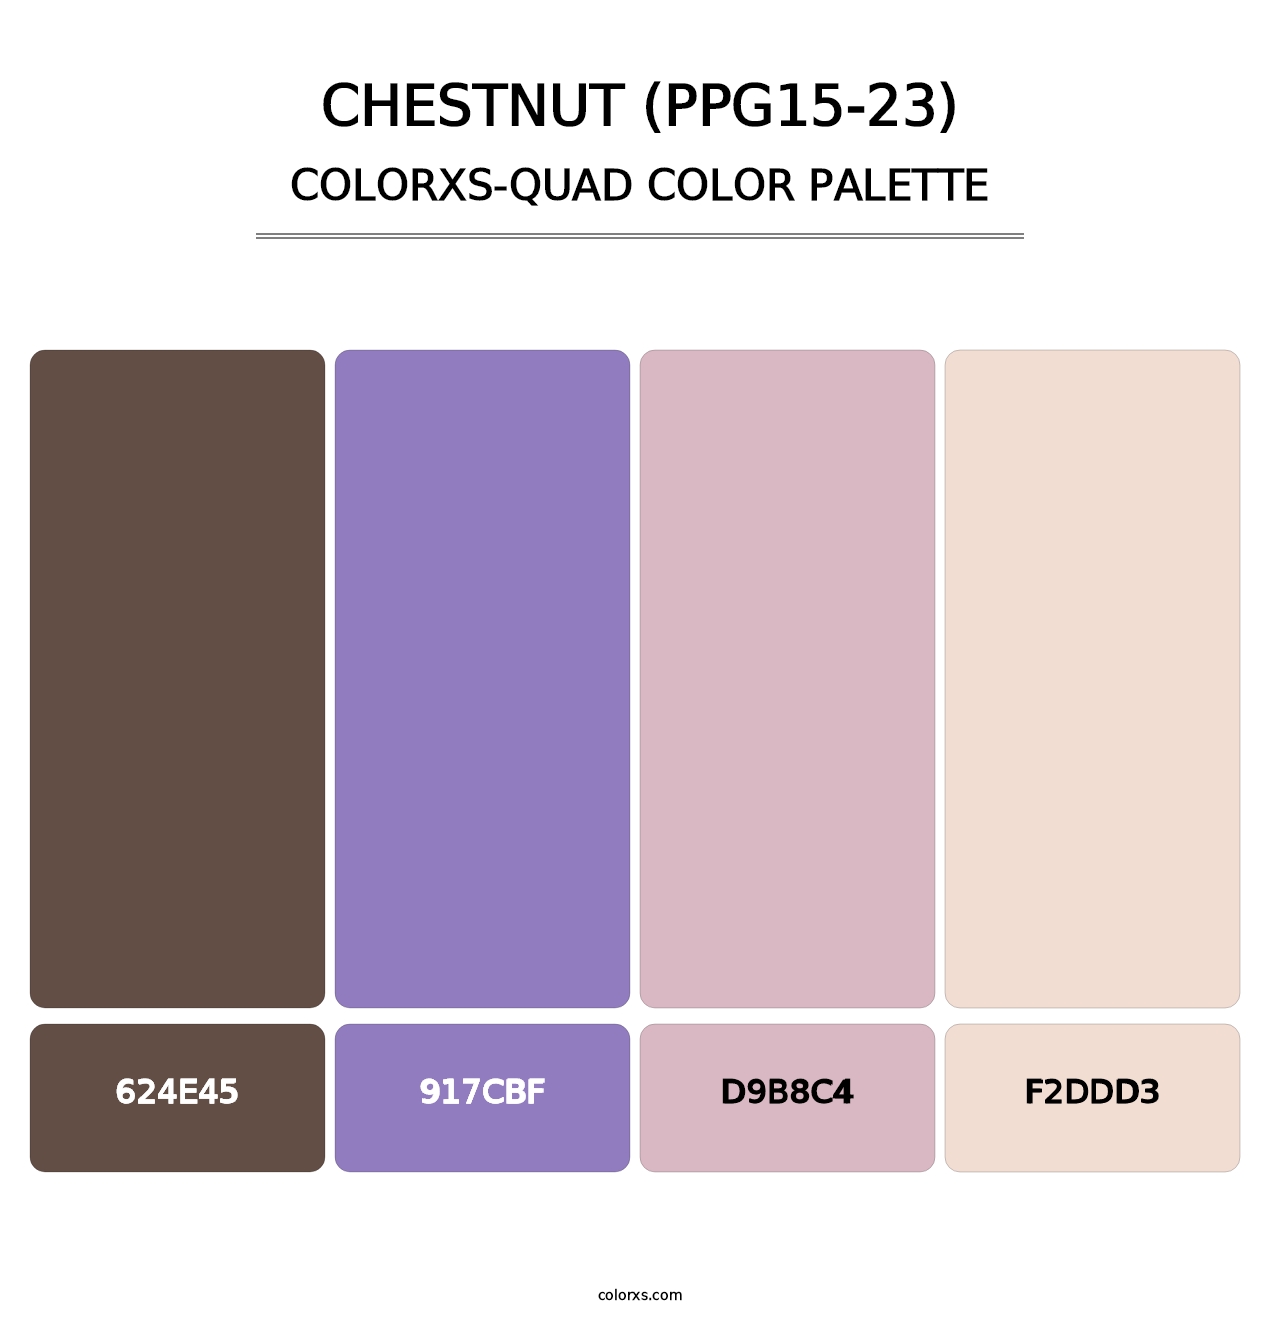 Chestnut (PPG15-23) - Colorxs Quad Palette